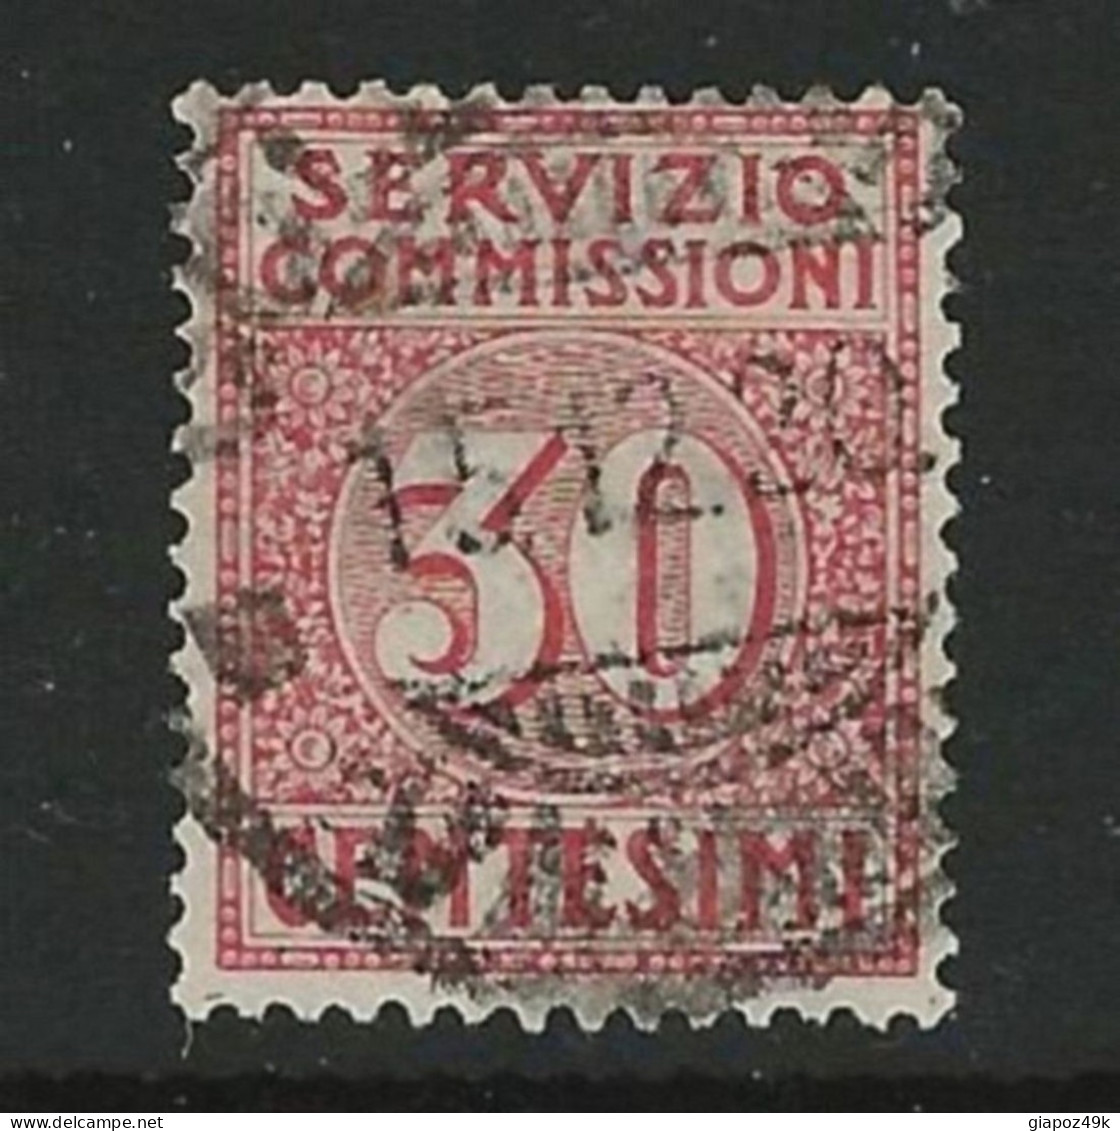 ● ITALIA REGNO 1913 ֍ SERVIZIO COMMISSIONI  ֍  N. 1 Usato ● Cat. 65 € ● Lotto N. 1930 ● - Postage Due